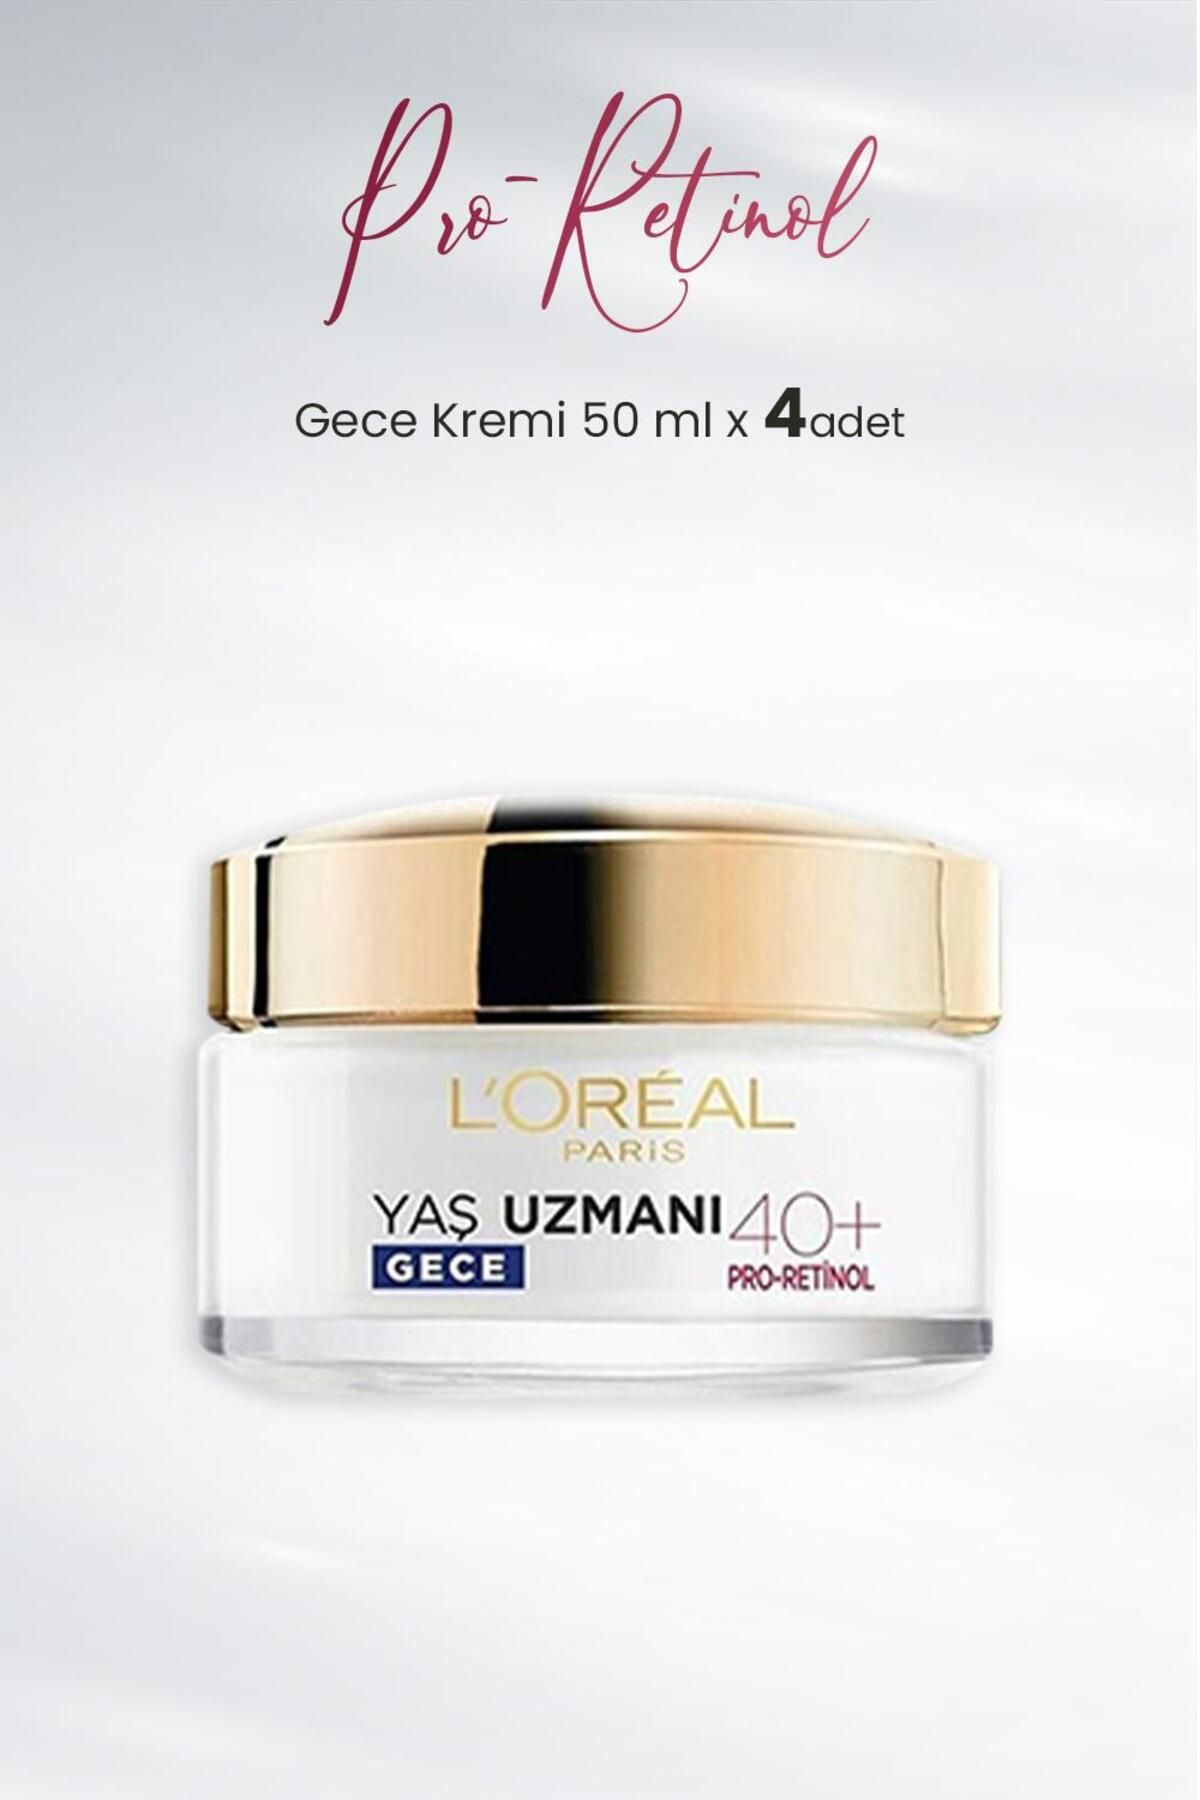 L'Oreal Paris Yaş Uzmanı Gece Kremi 40+ Pro-retinol 50 Ml X 4 Adet